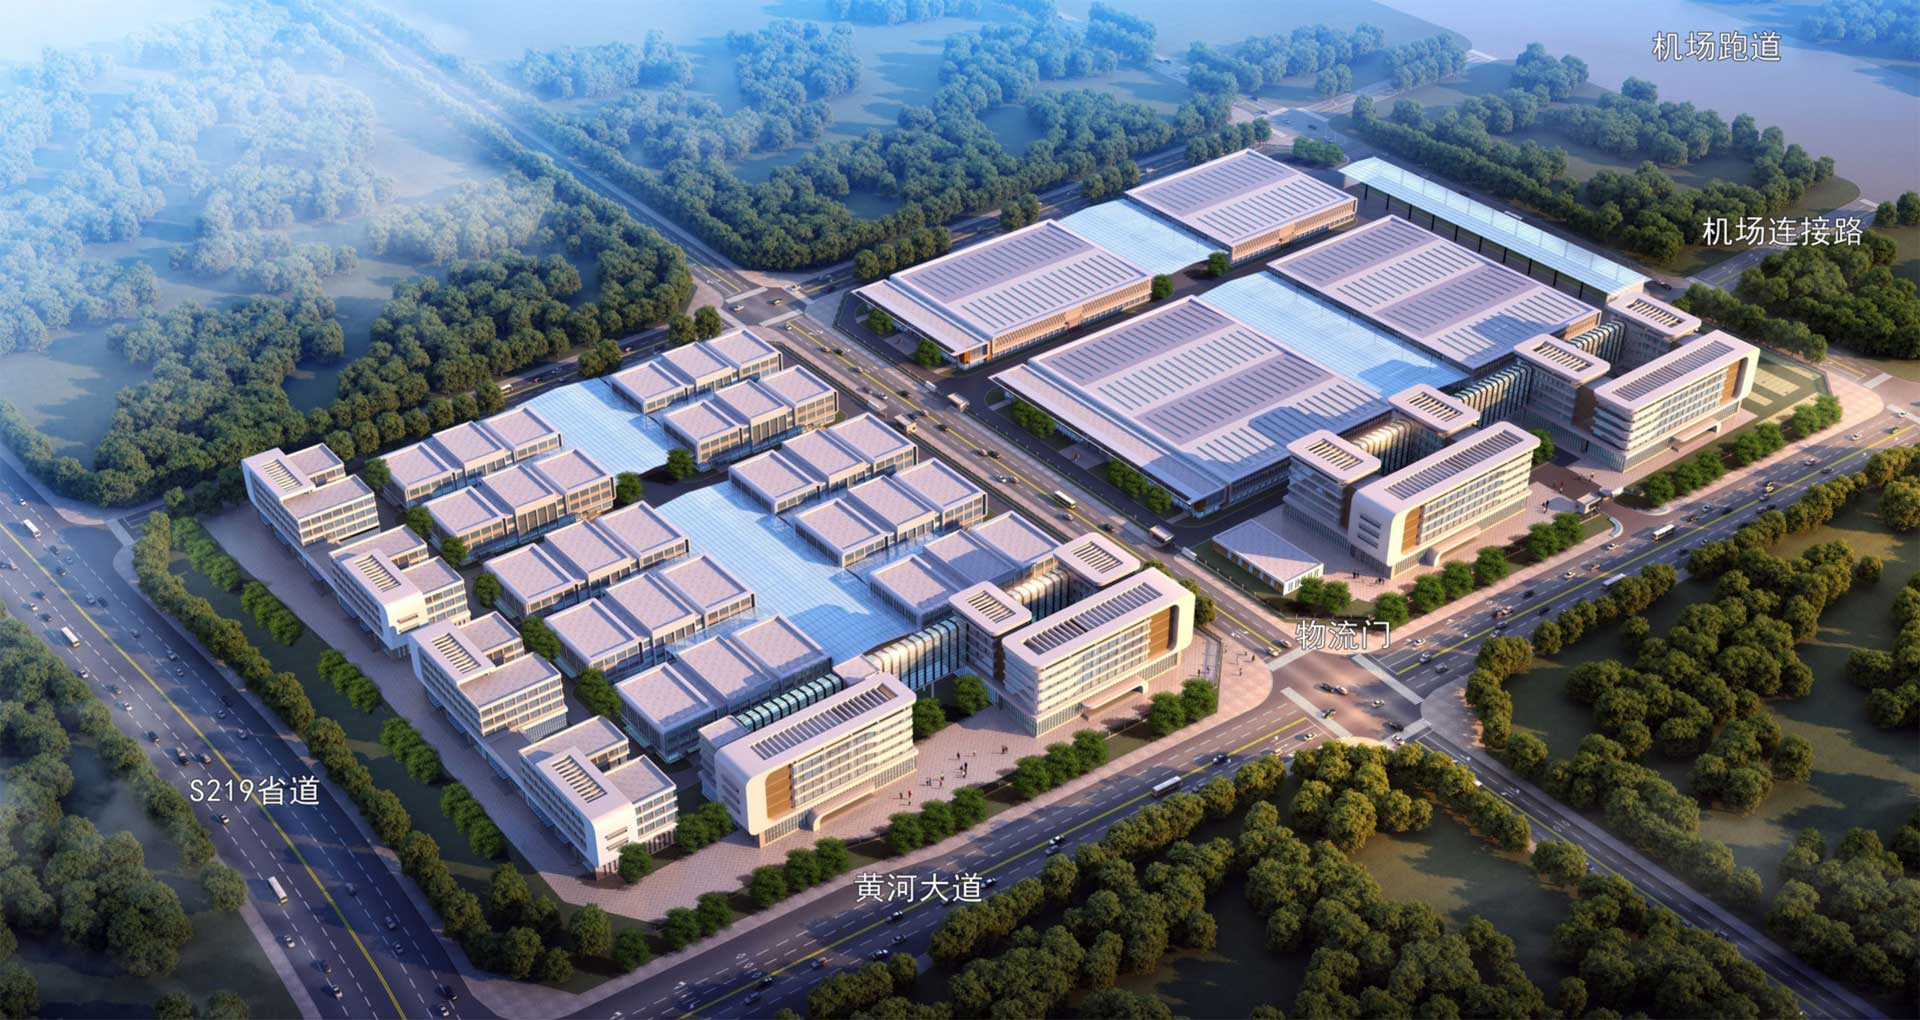 安陽東飛通航制造中心一期后續工程及通航產業研發孵化中心項目